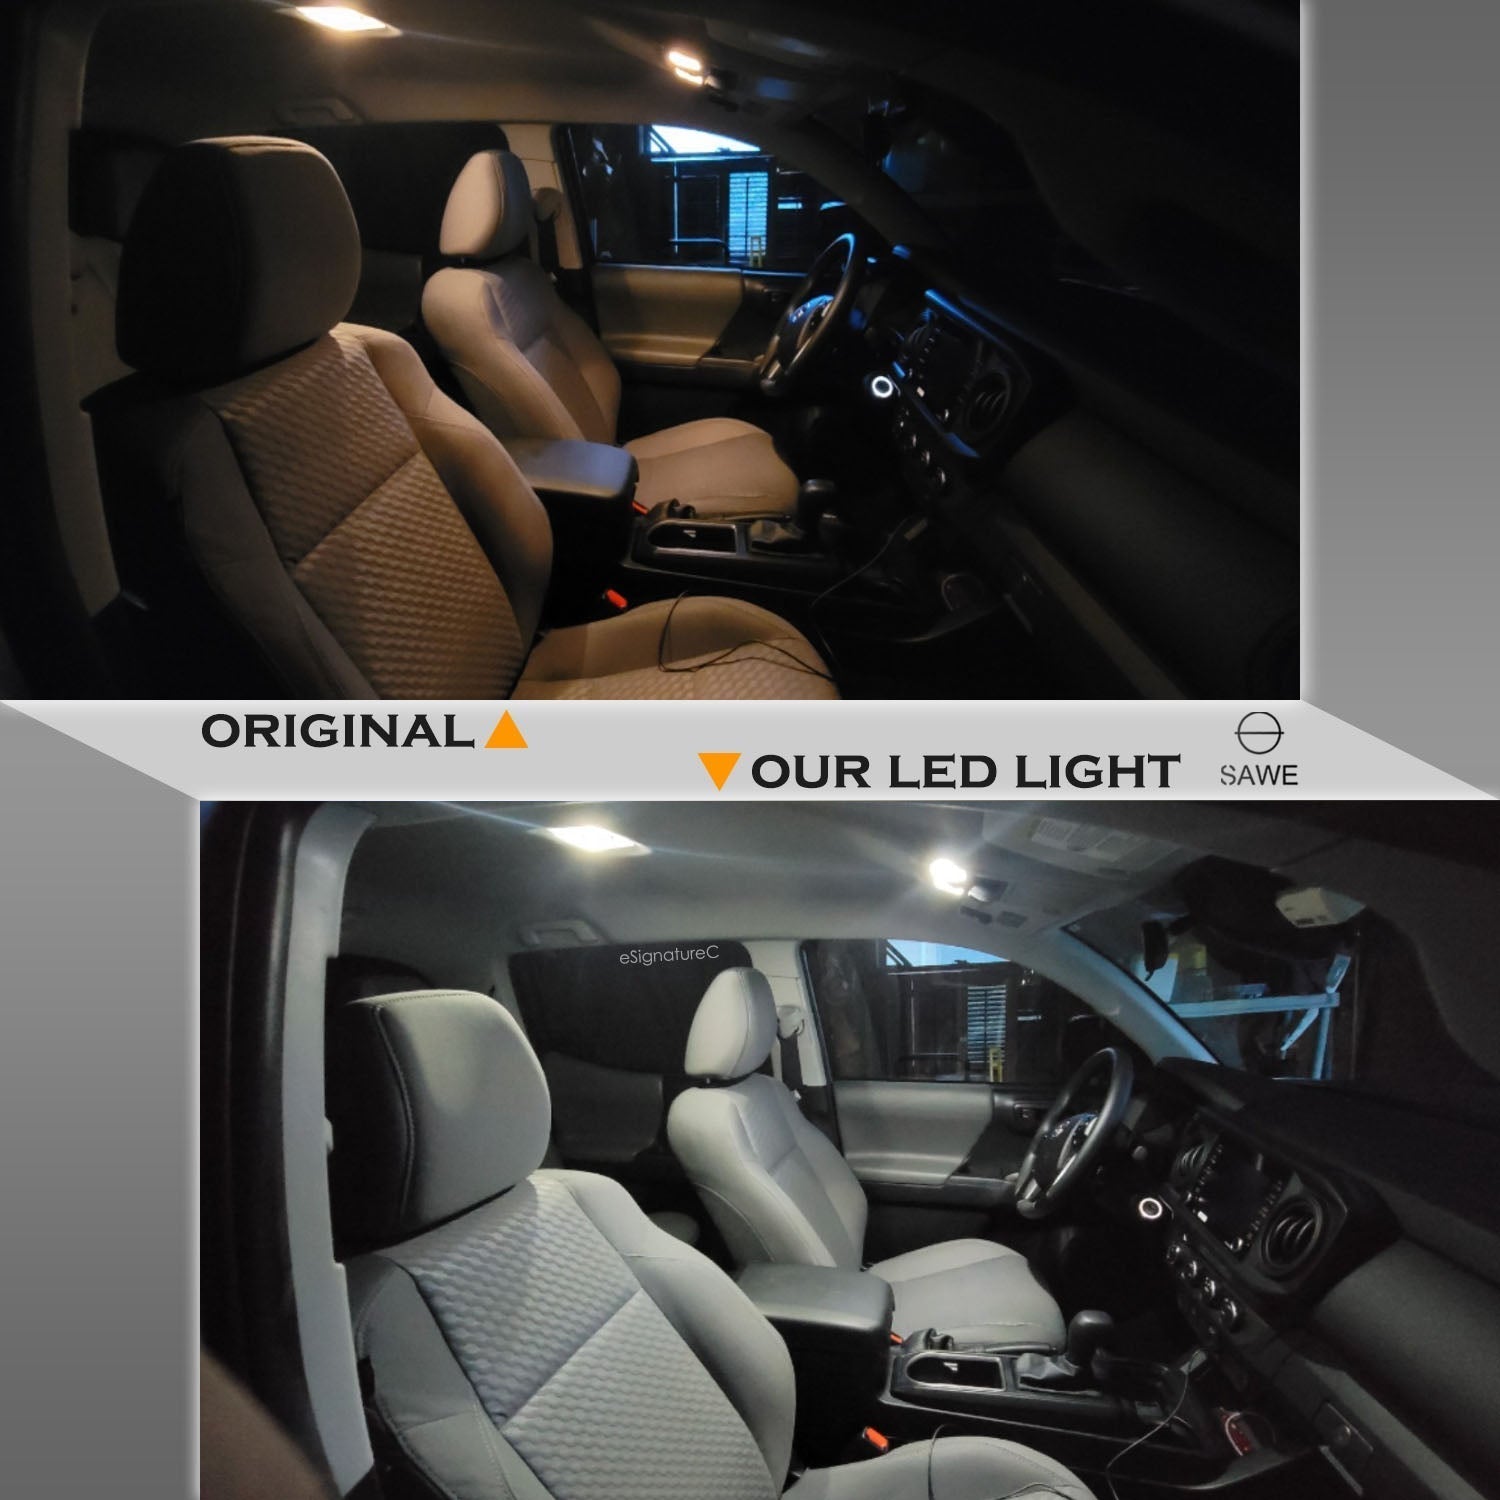 For Honda Pilot Interior LED Lights - Dome & Map Lights Package Kit for 2009 - 2015 - White